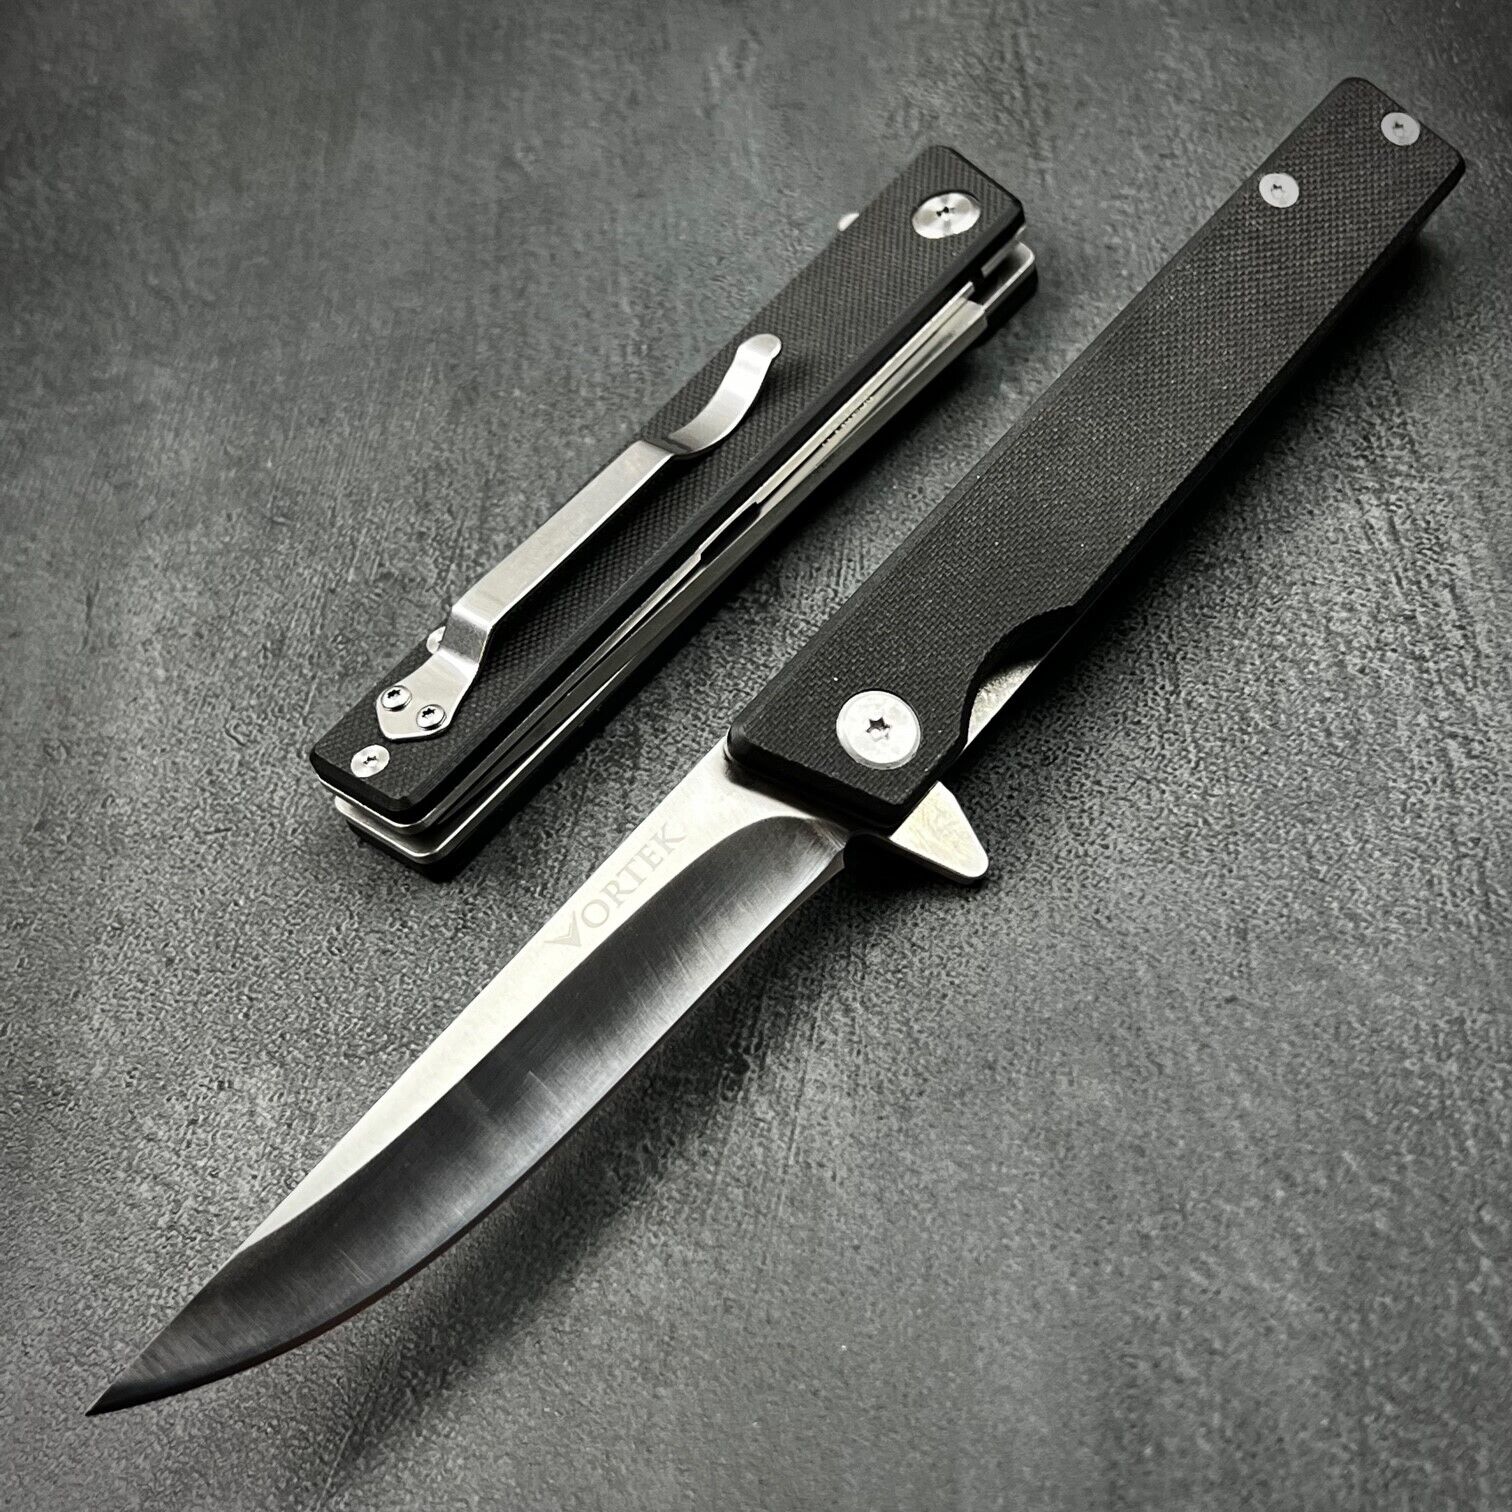 VORTEK VANGUARD Black G10 Ball Bearing Flipper Blade Large Folding Pocket Knife